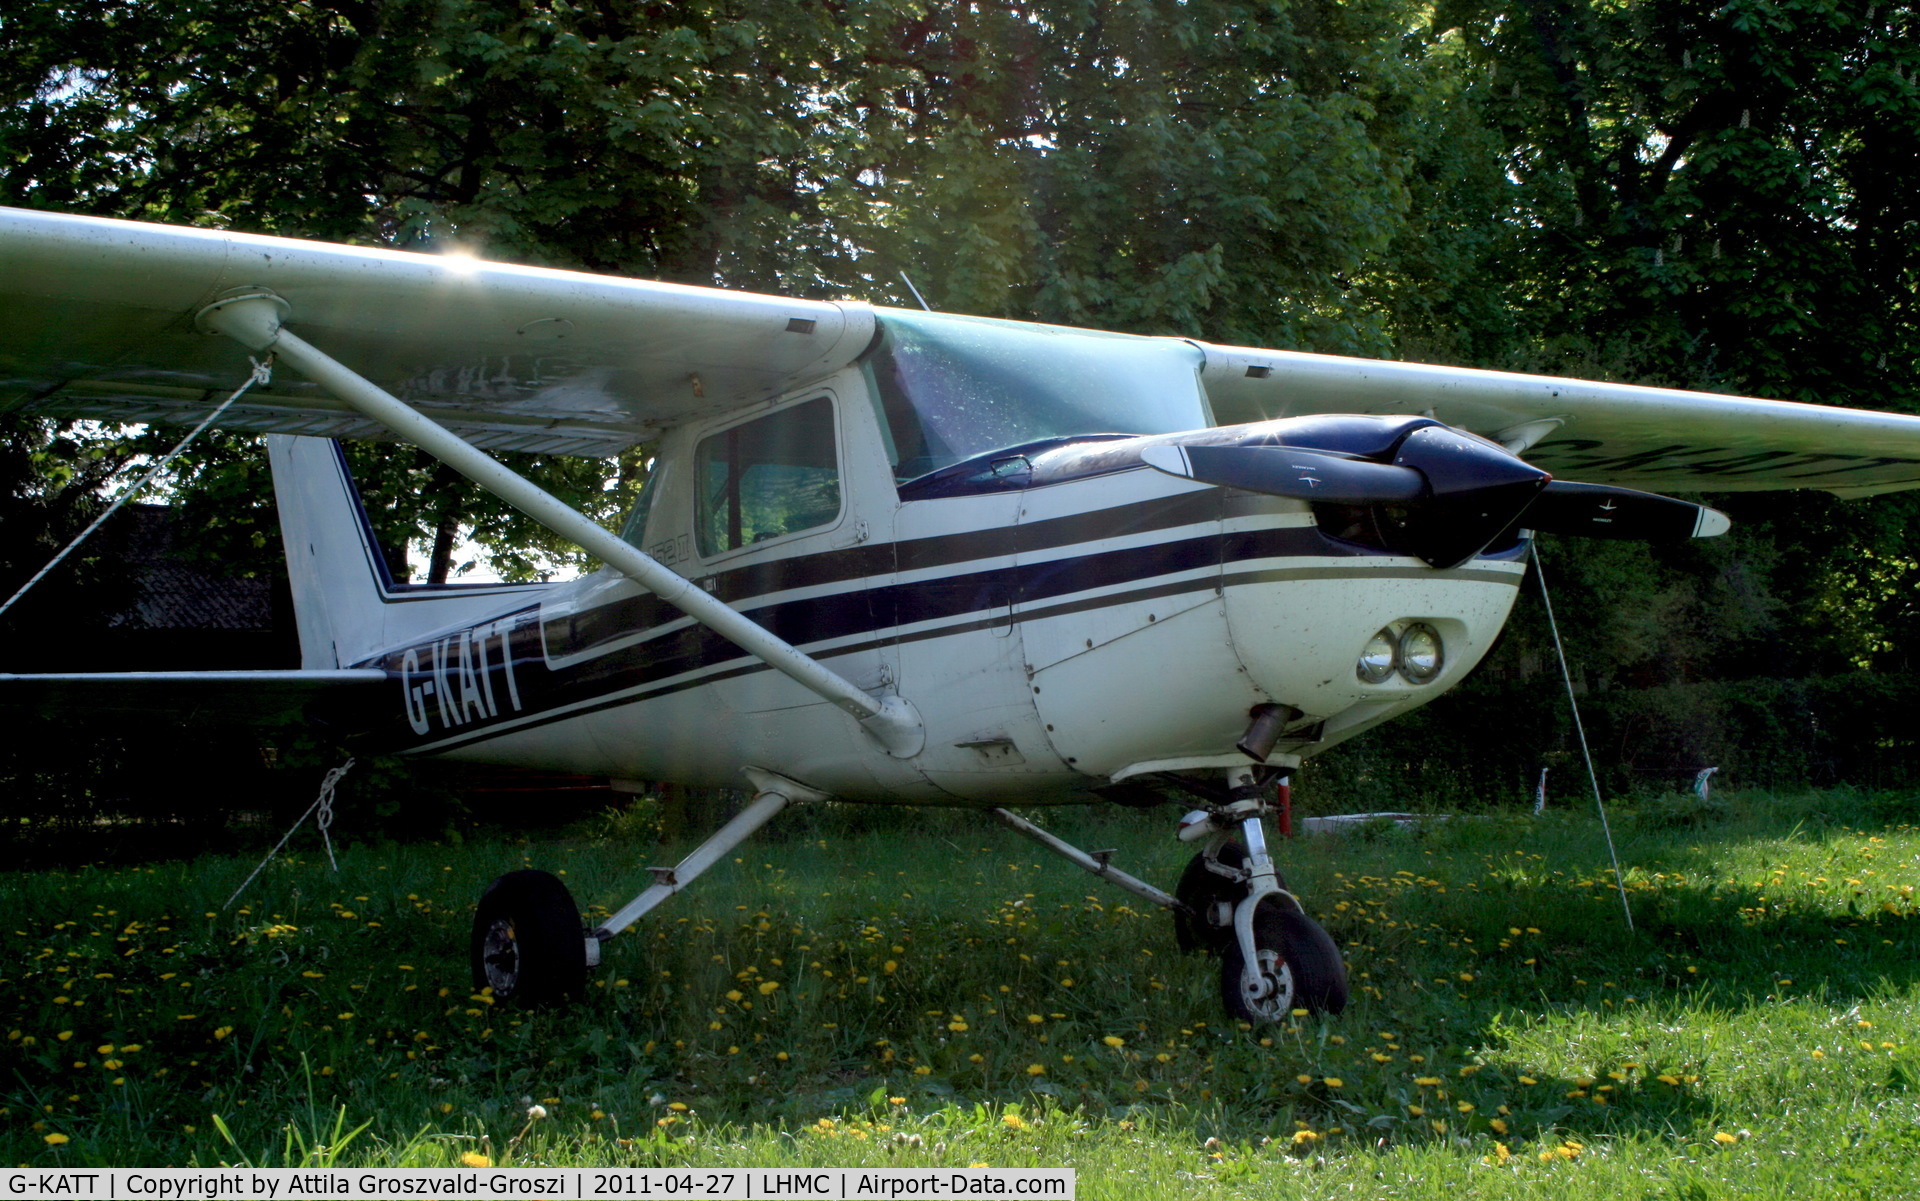 G-KATT, 1981 Cessna 152 C/N 152-85661, Miskolc Airport, Hungary